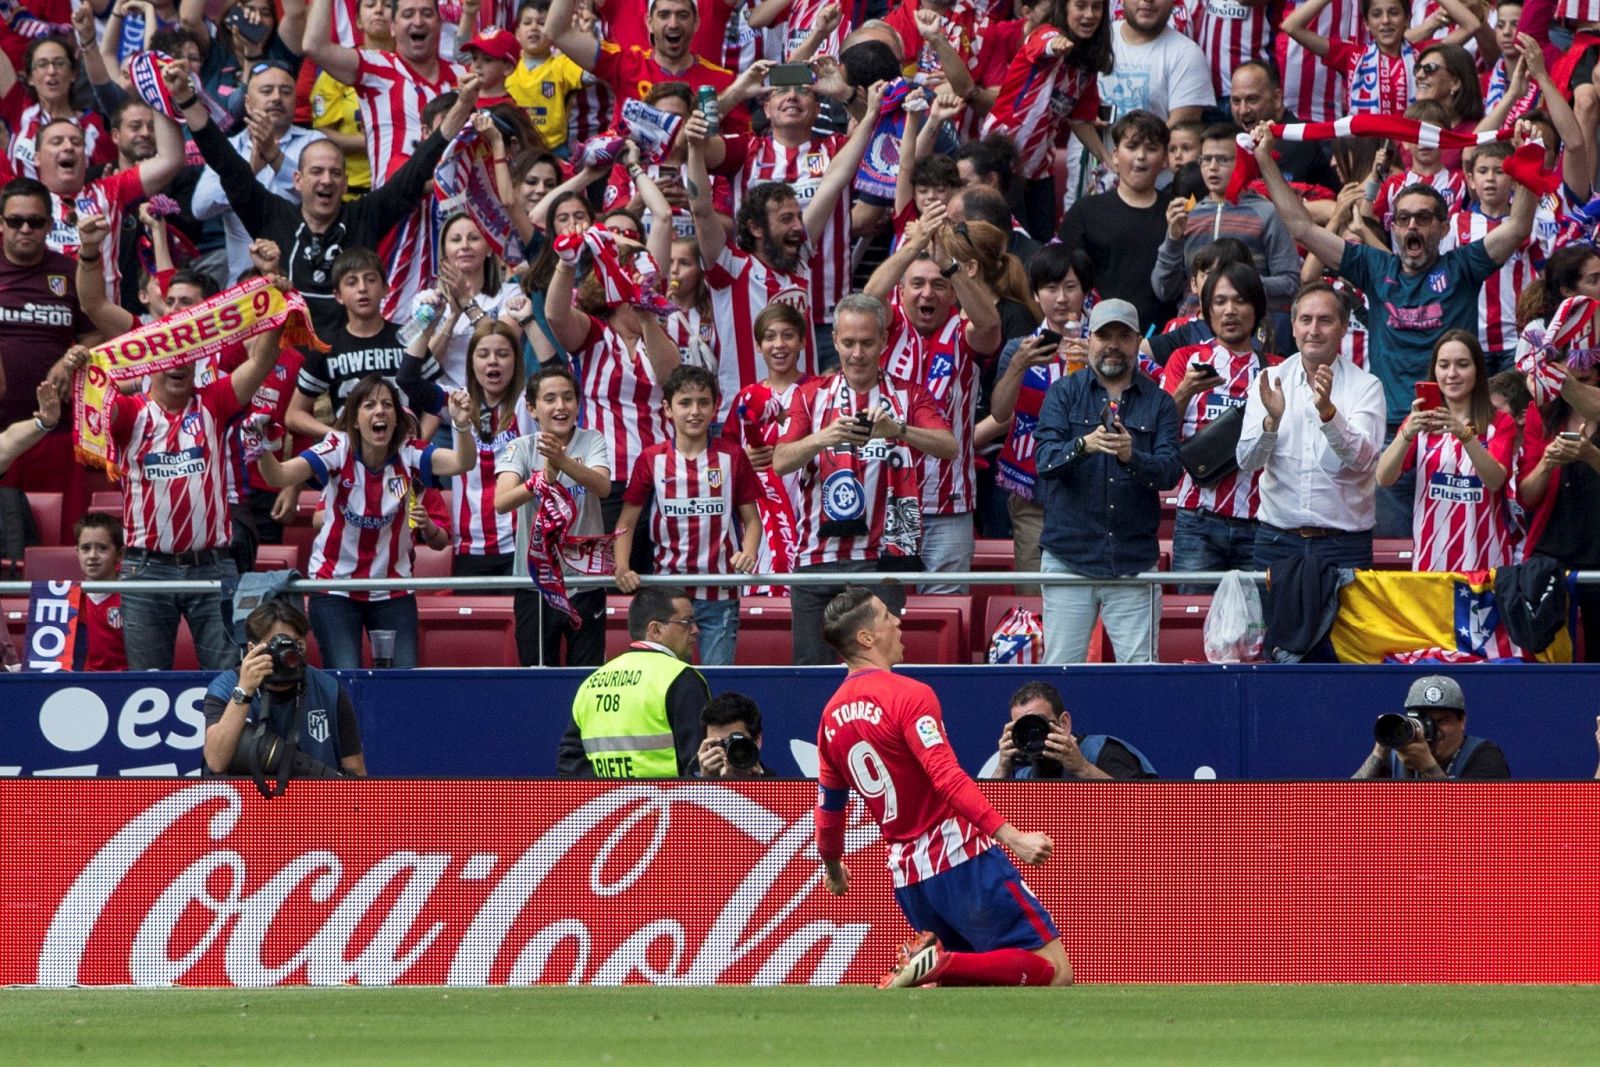 El delantero del Atlético de Madrid, Fernando Torres, celebra el gol contra el Eibar.